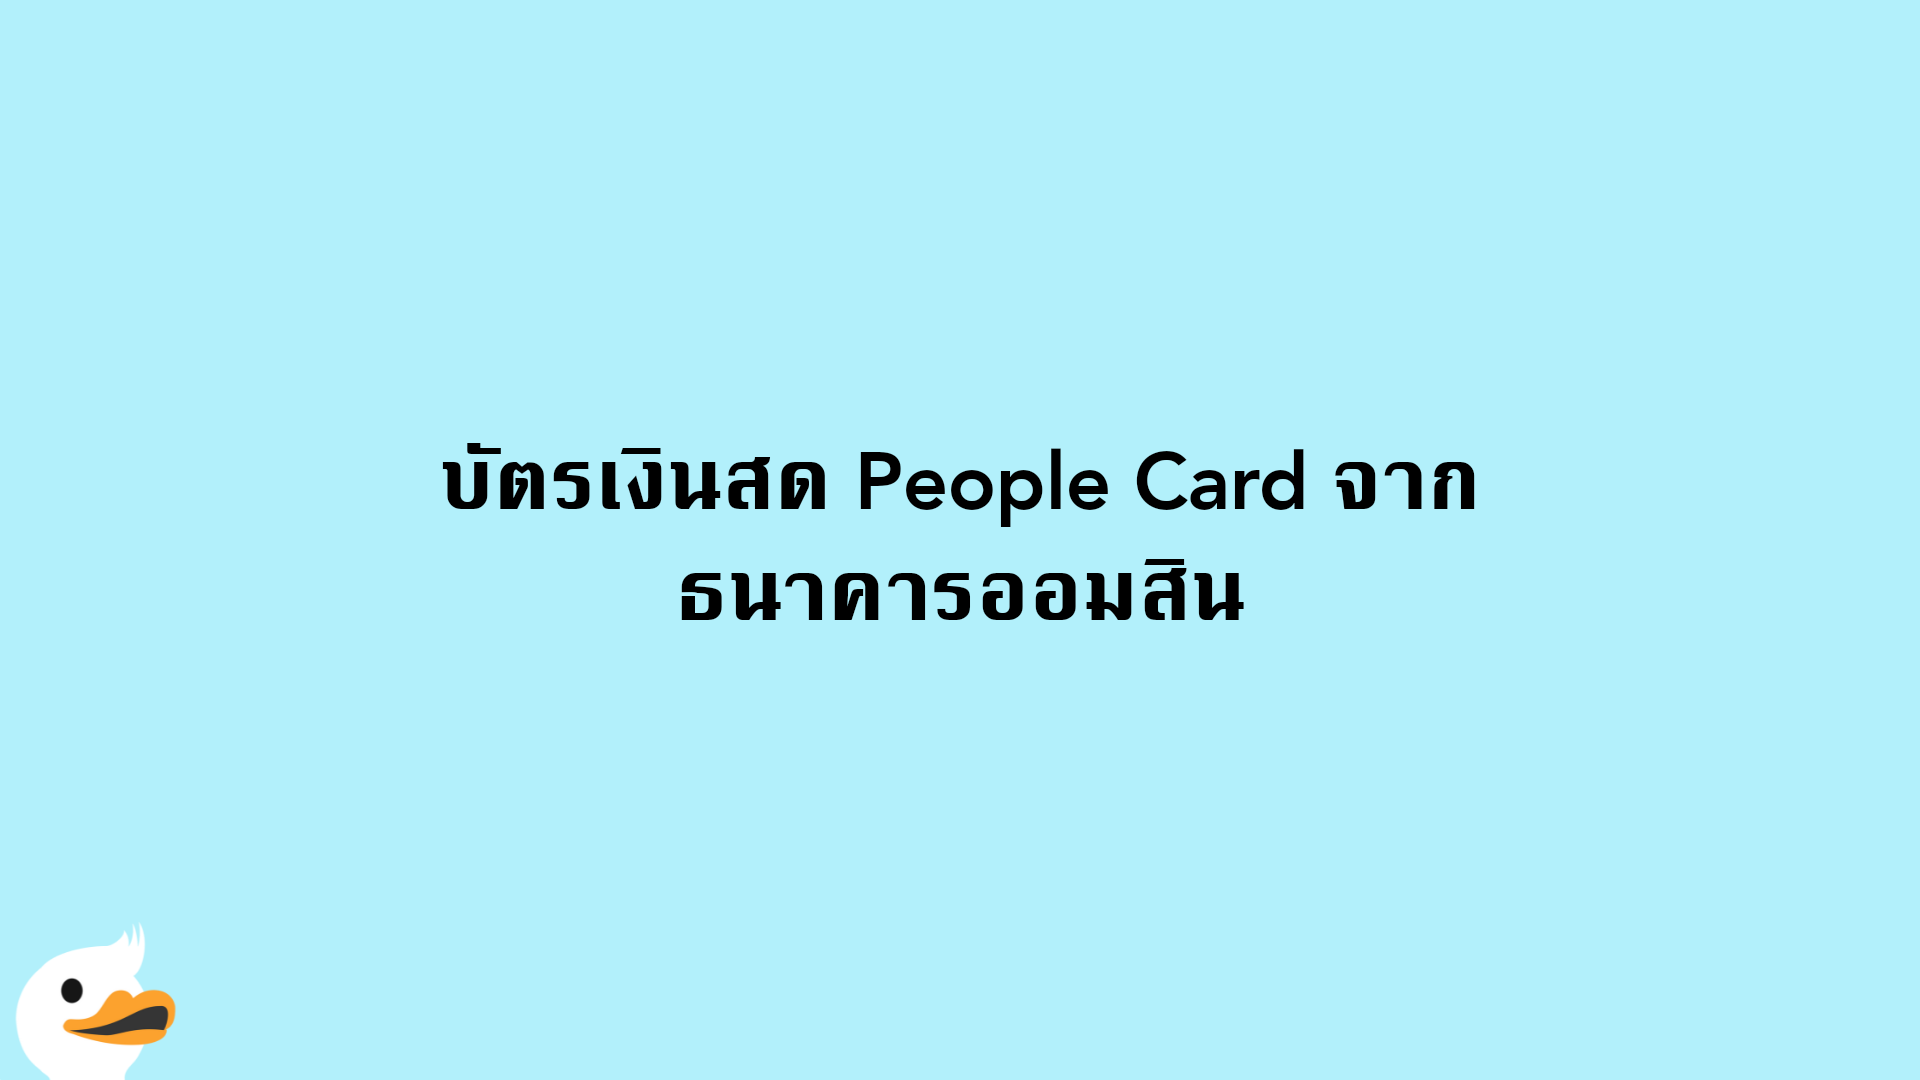 บัตรเงินสด People Card จาก ธนาคารออมสิน